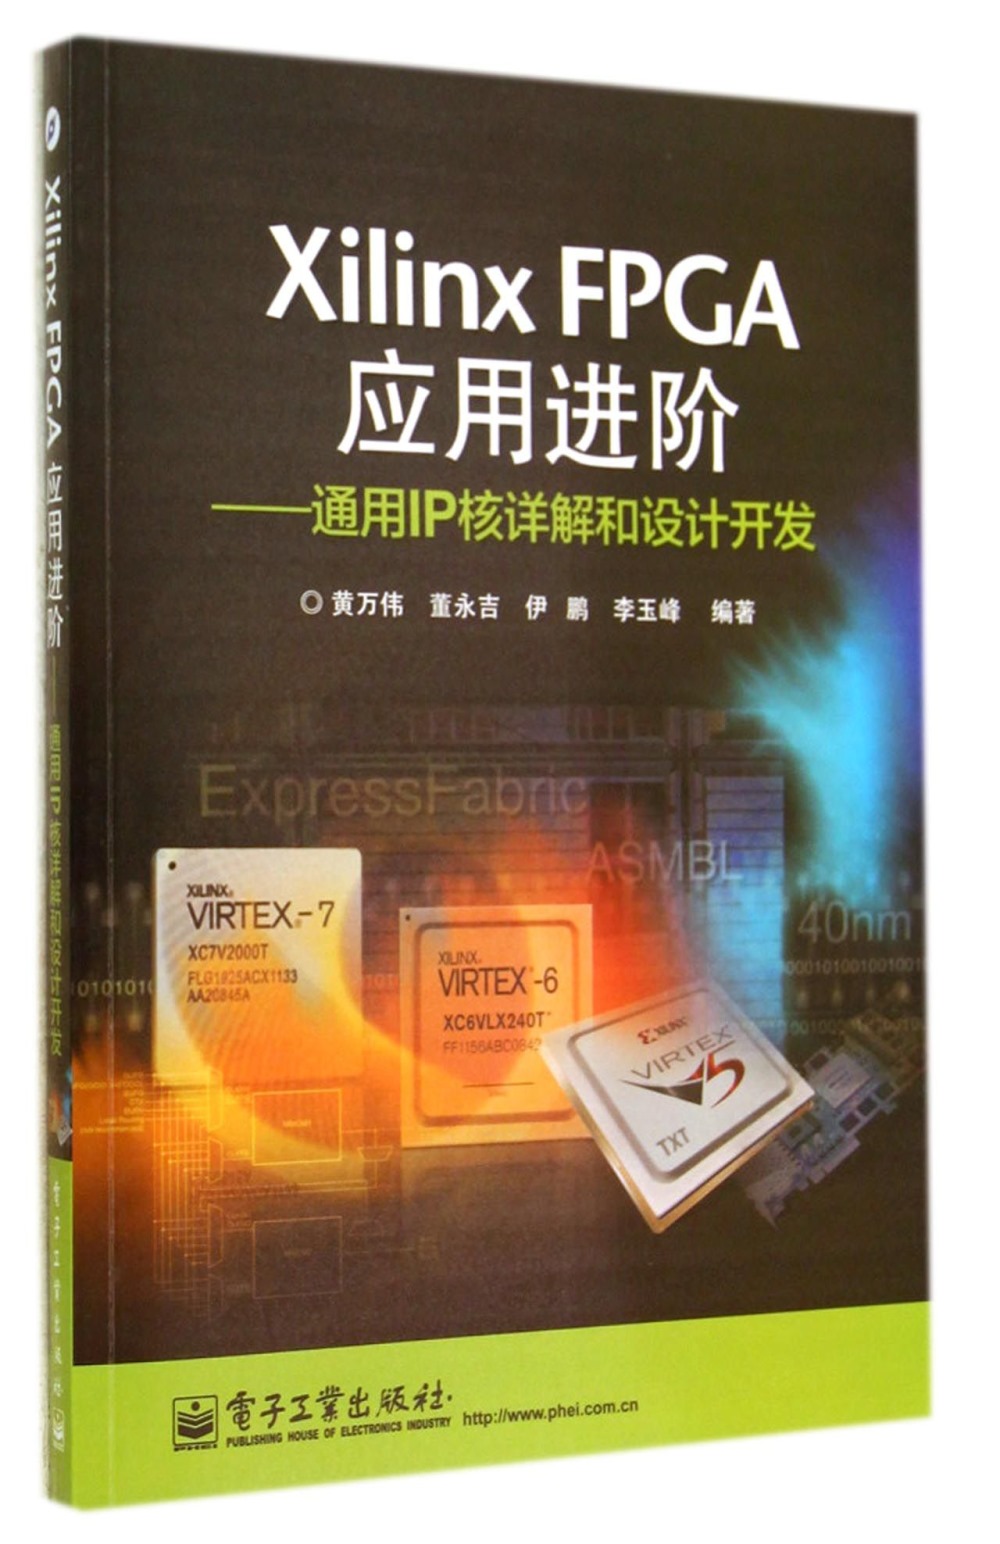 Xilinx FPGA應用進階：通用IP核詳解和設計開發